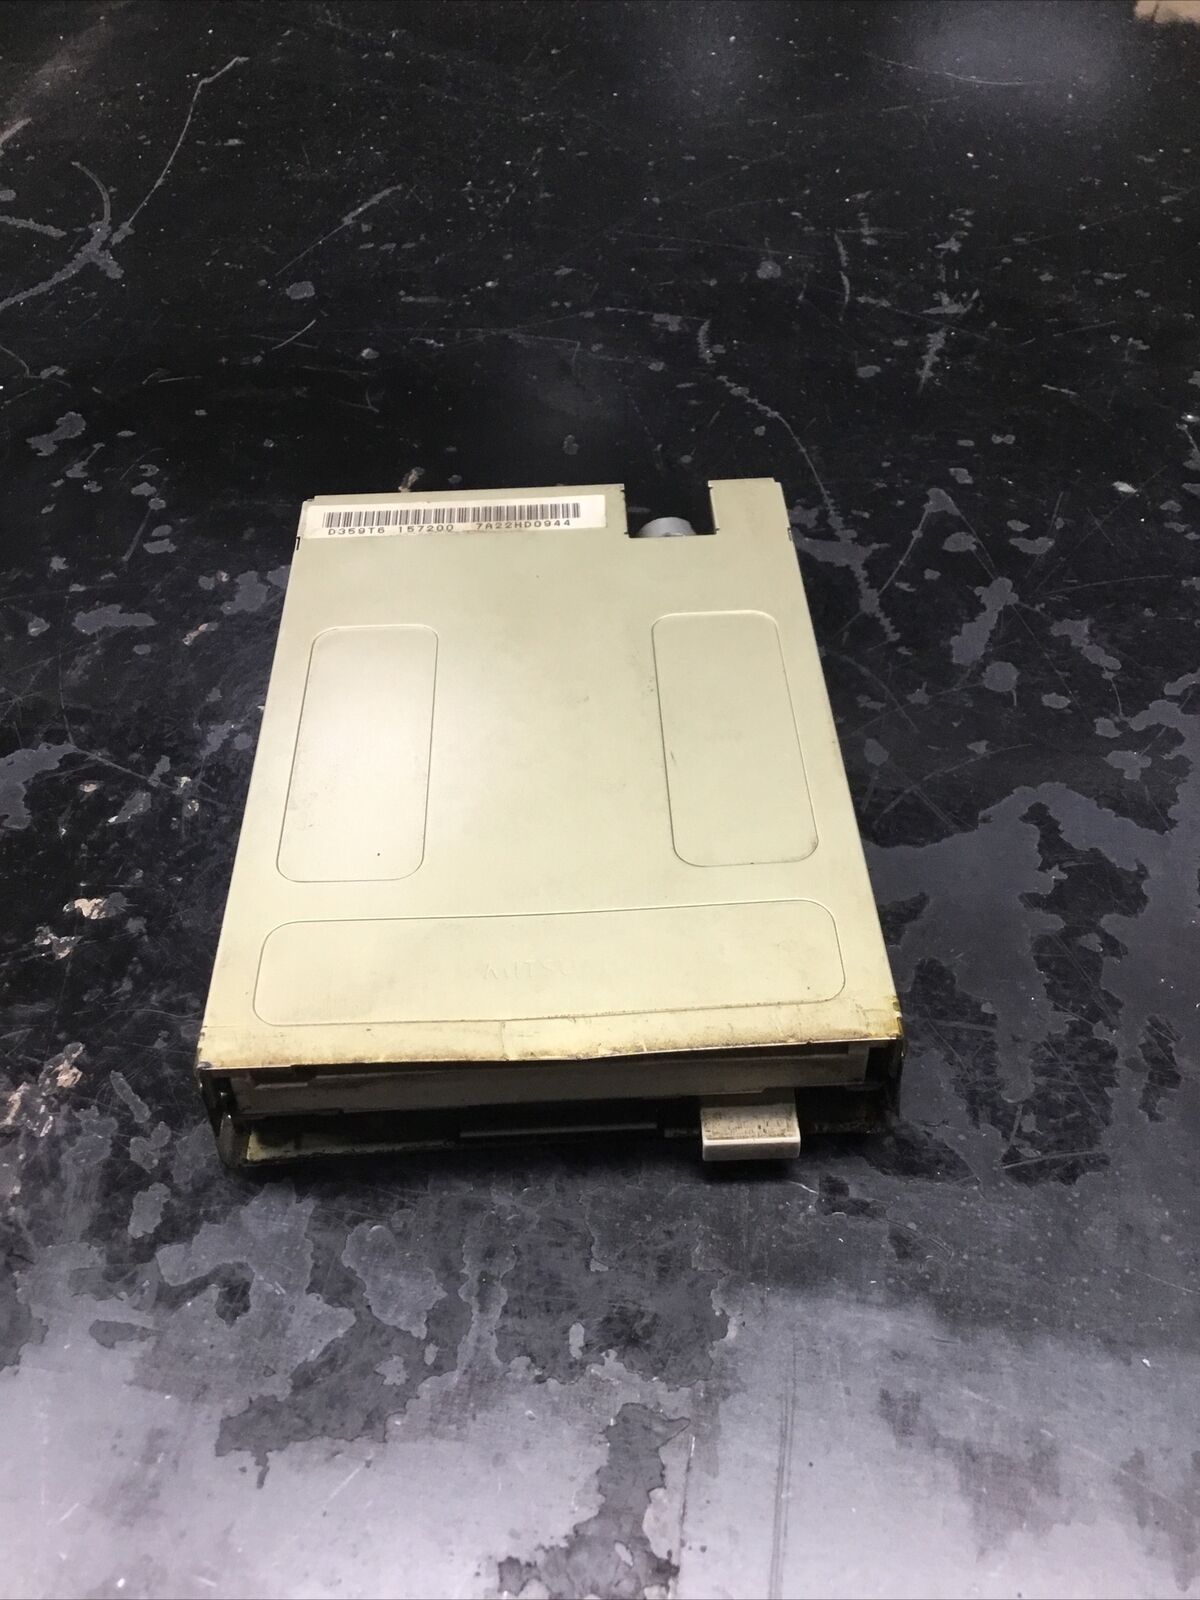 Mitsumi/Newtronics D359T6 Floppy Drive #716K130